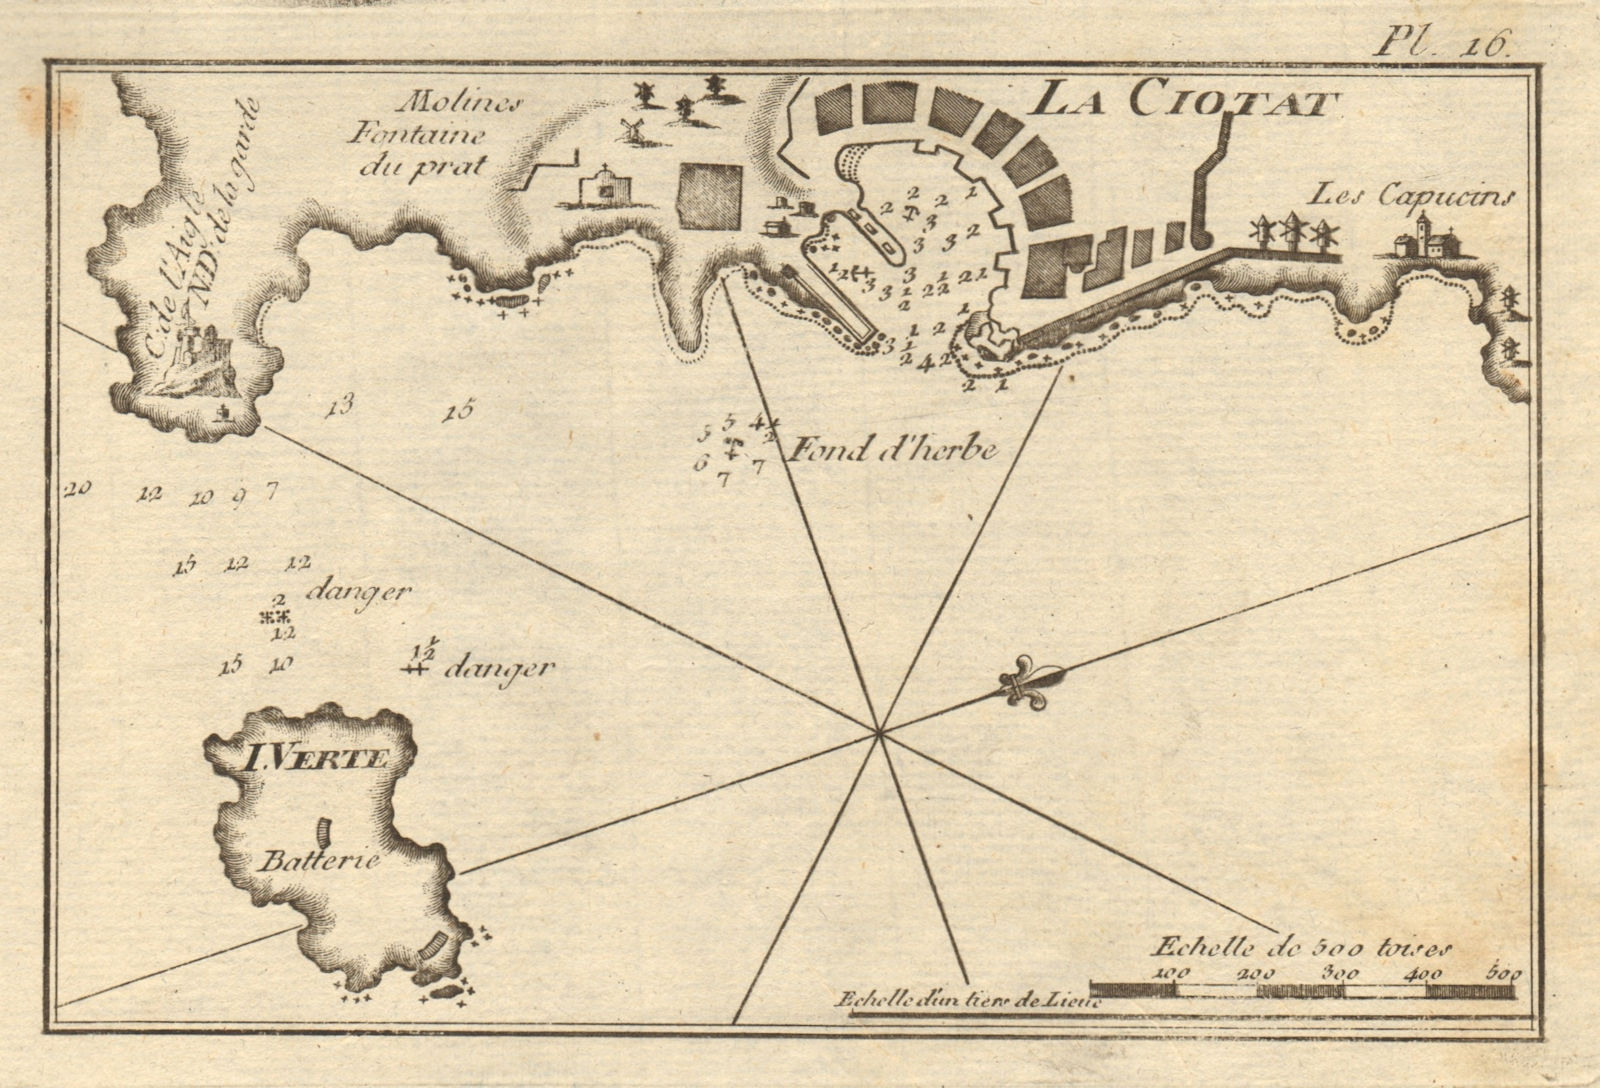 Port of La Ciotat & Ile Verte. Bouches-du-Rhône. ROUX 1804 old antique map